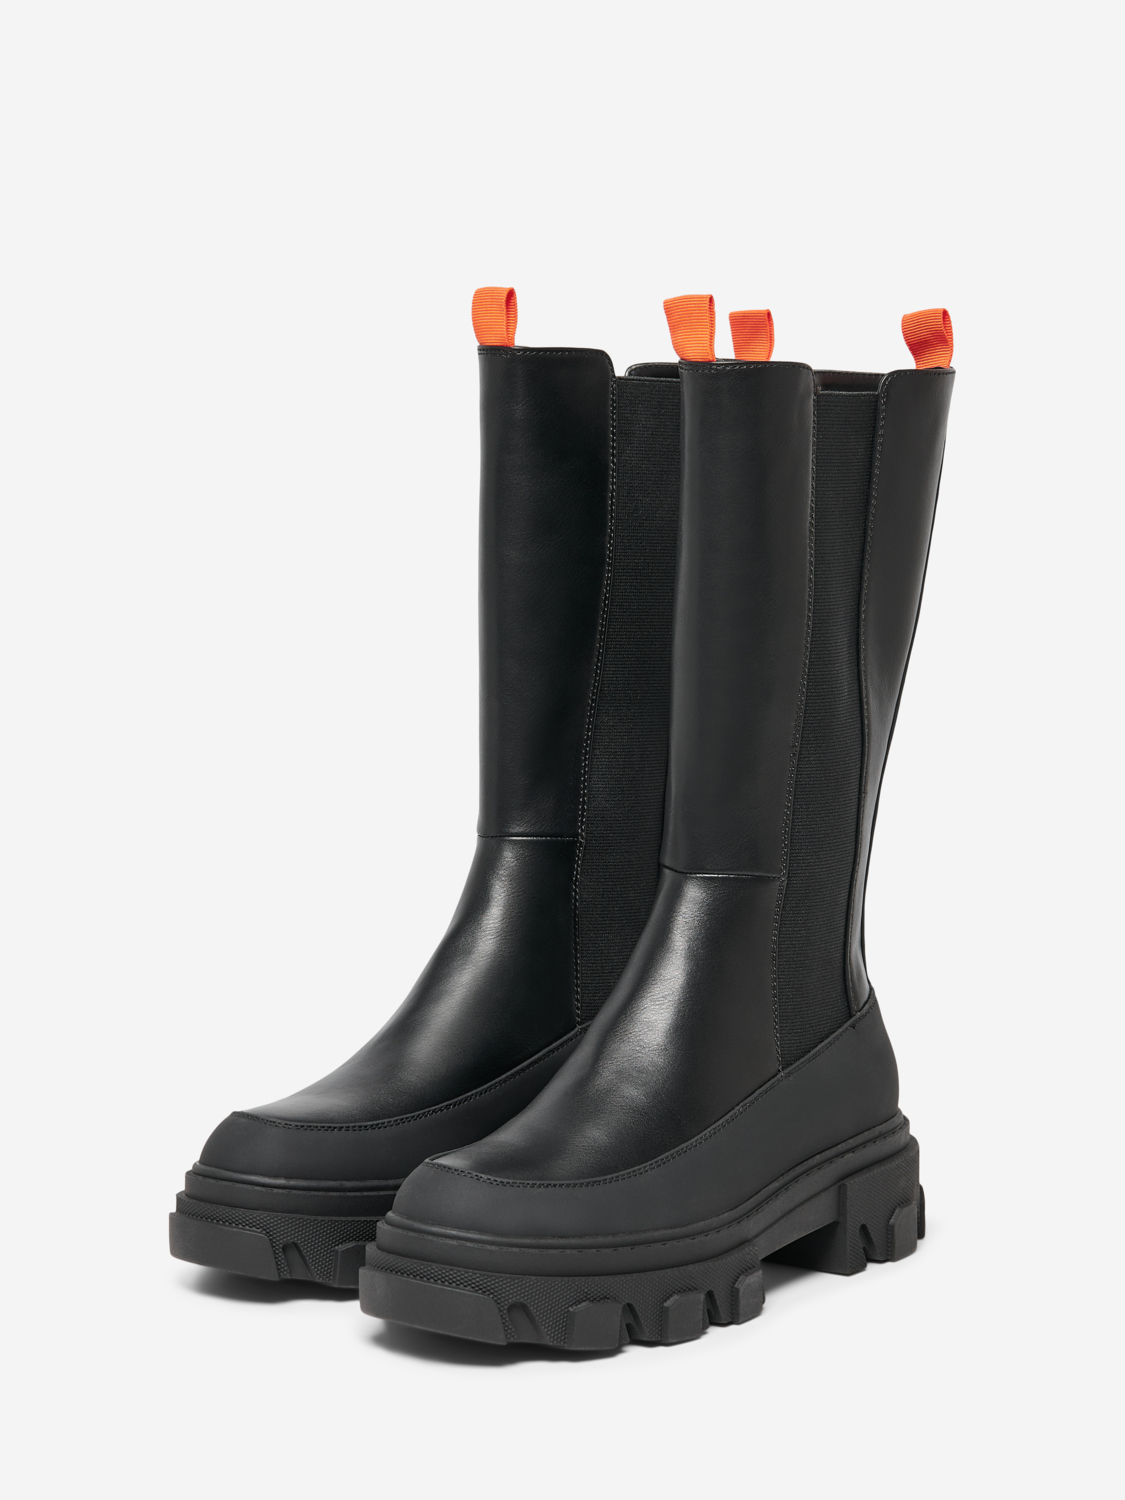 FINAL SALE - Tola faux leather boots, BLACK, large